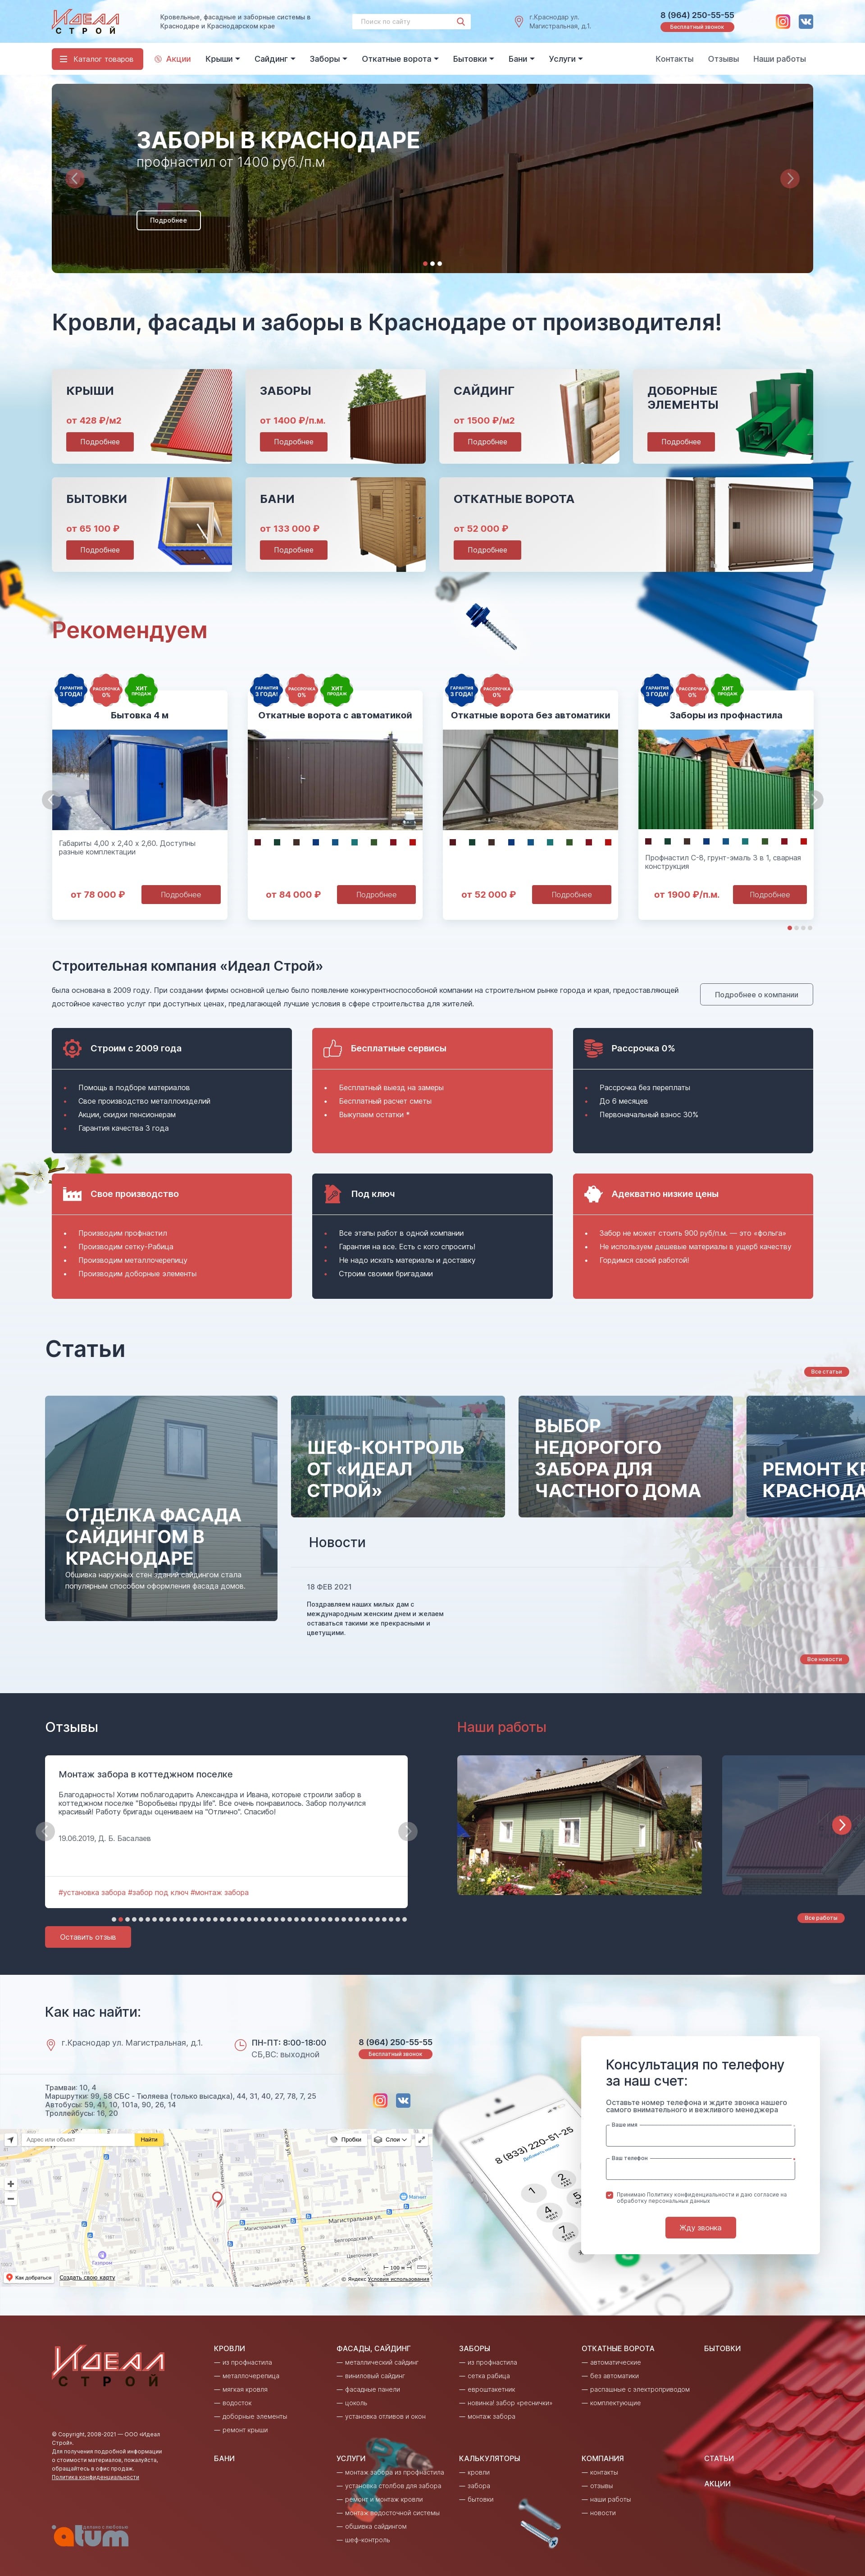 Создание сайта, разработка дизайна и логотипа, а также нейминг для проекта «Муравейник»